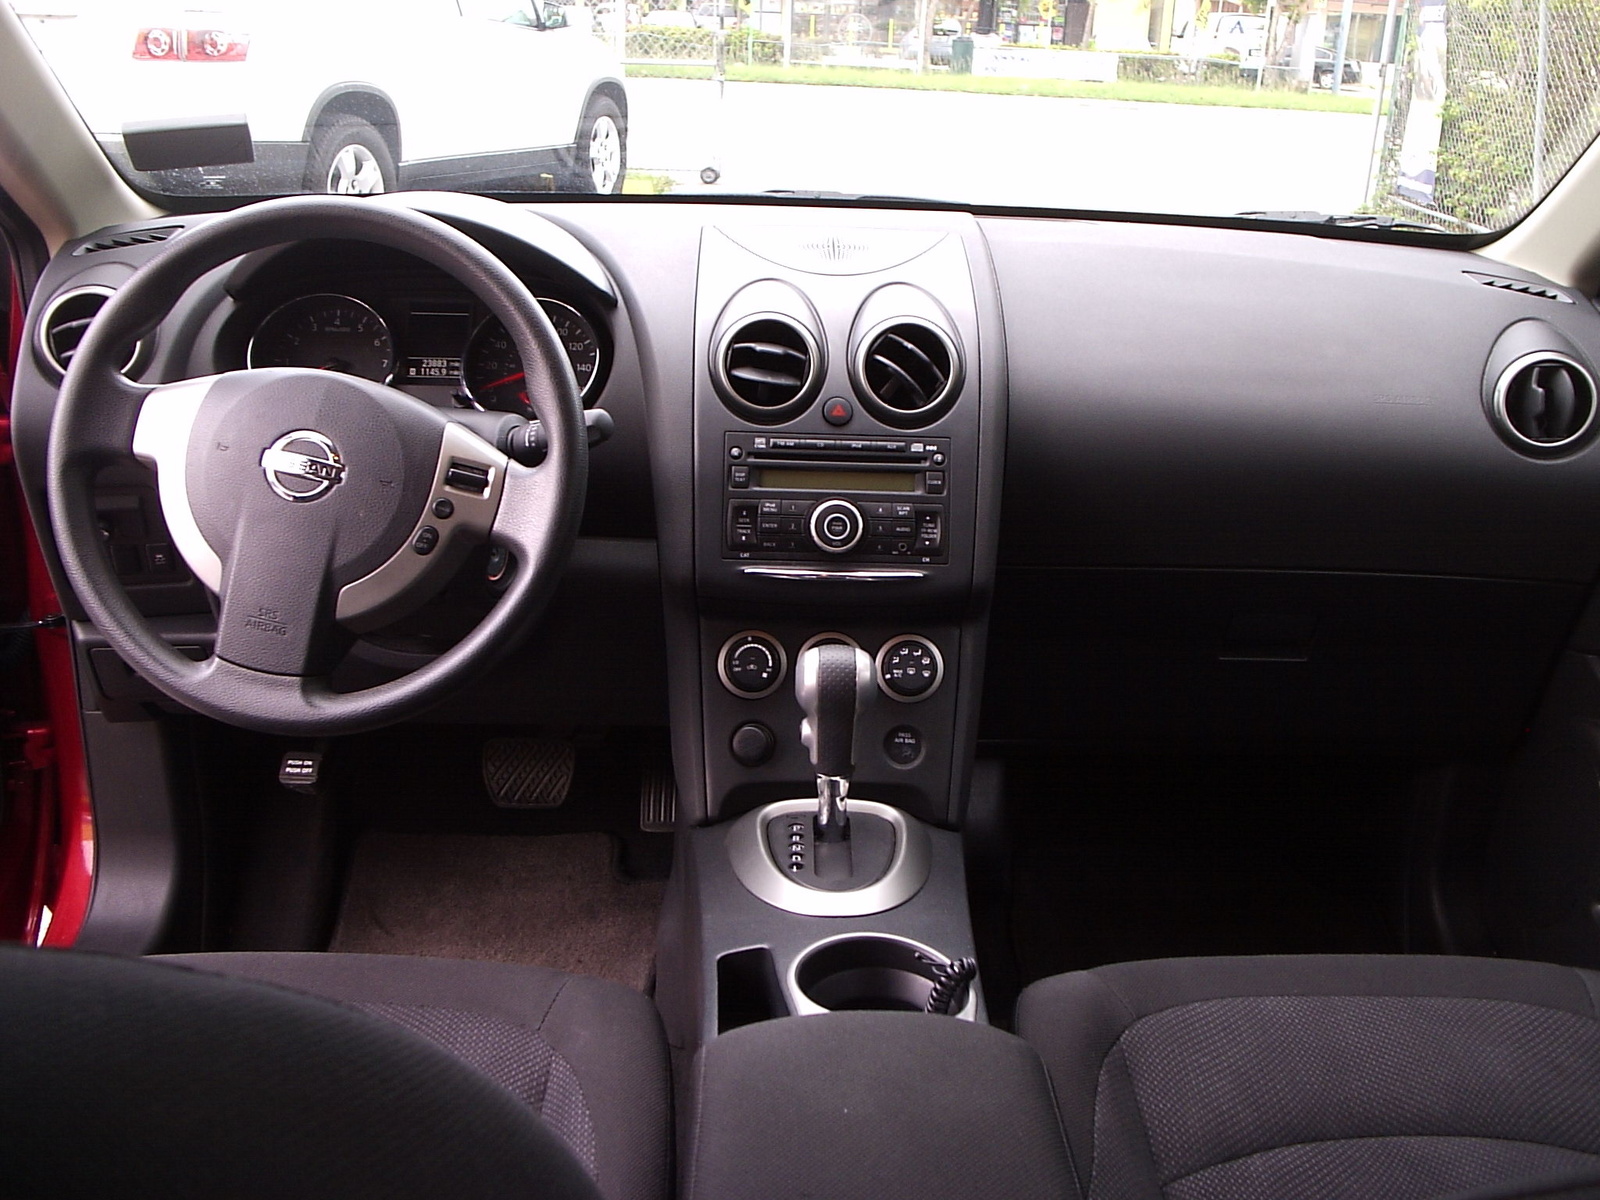 2011 Nissan rogue interior photos #4